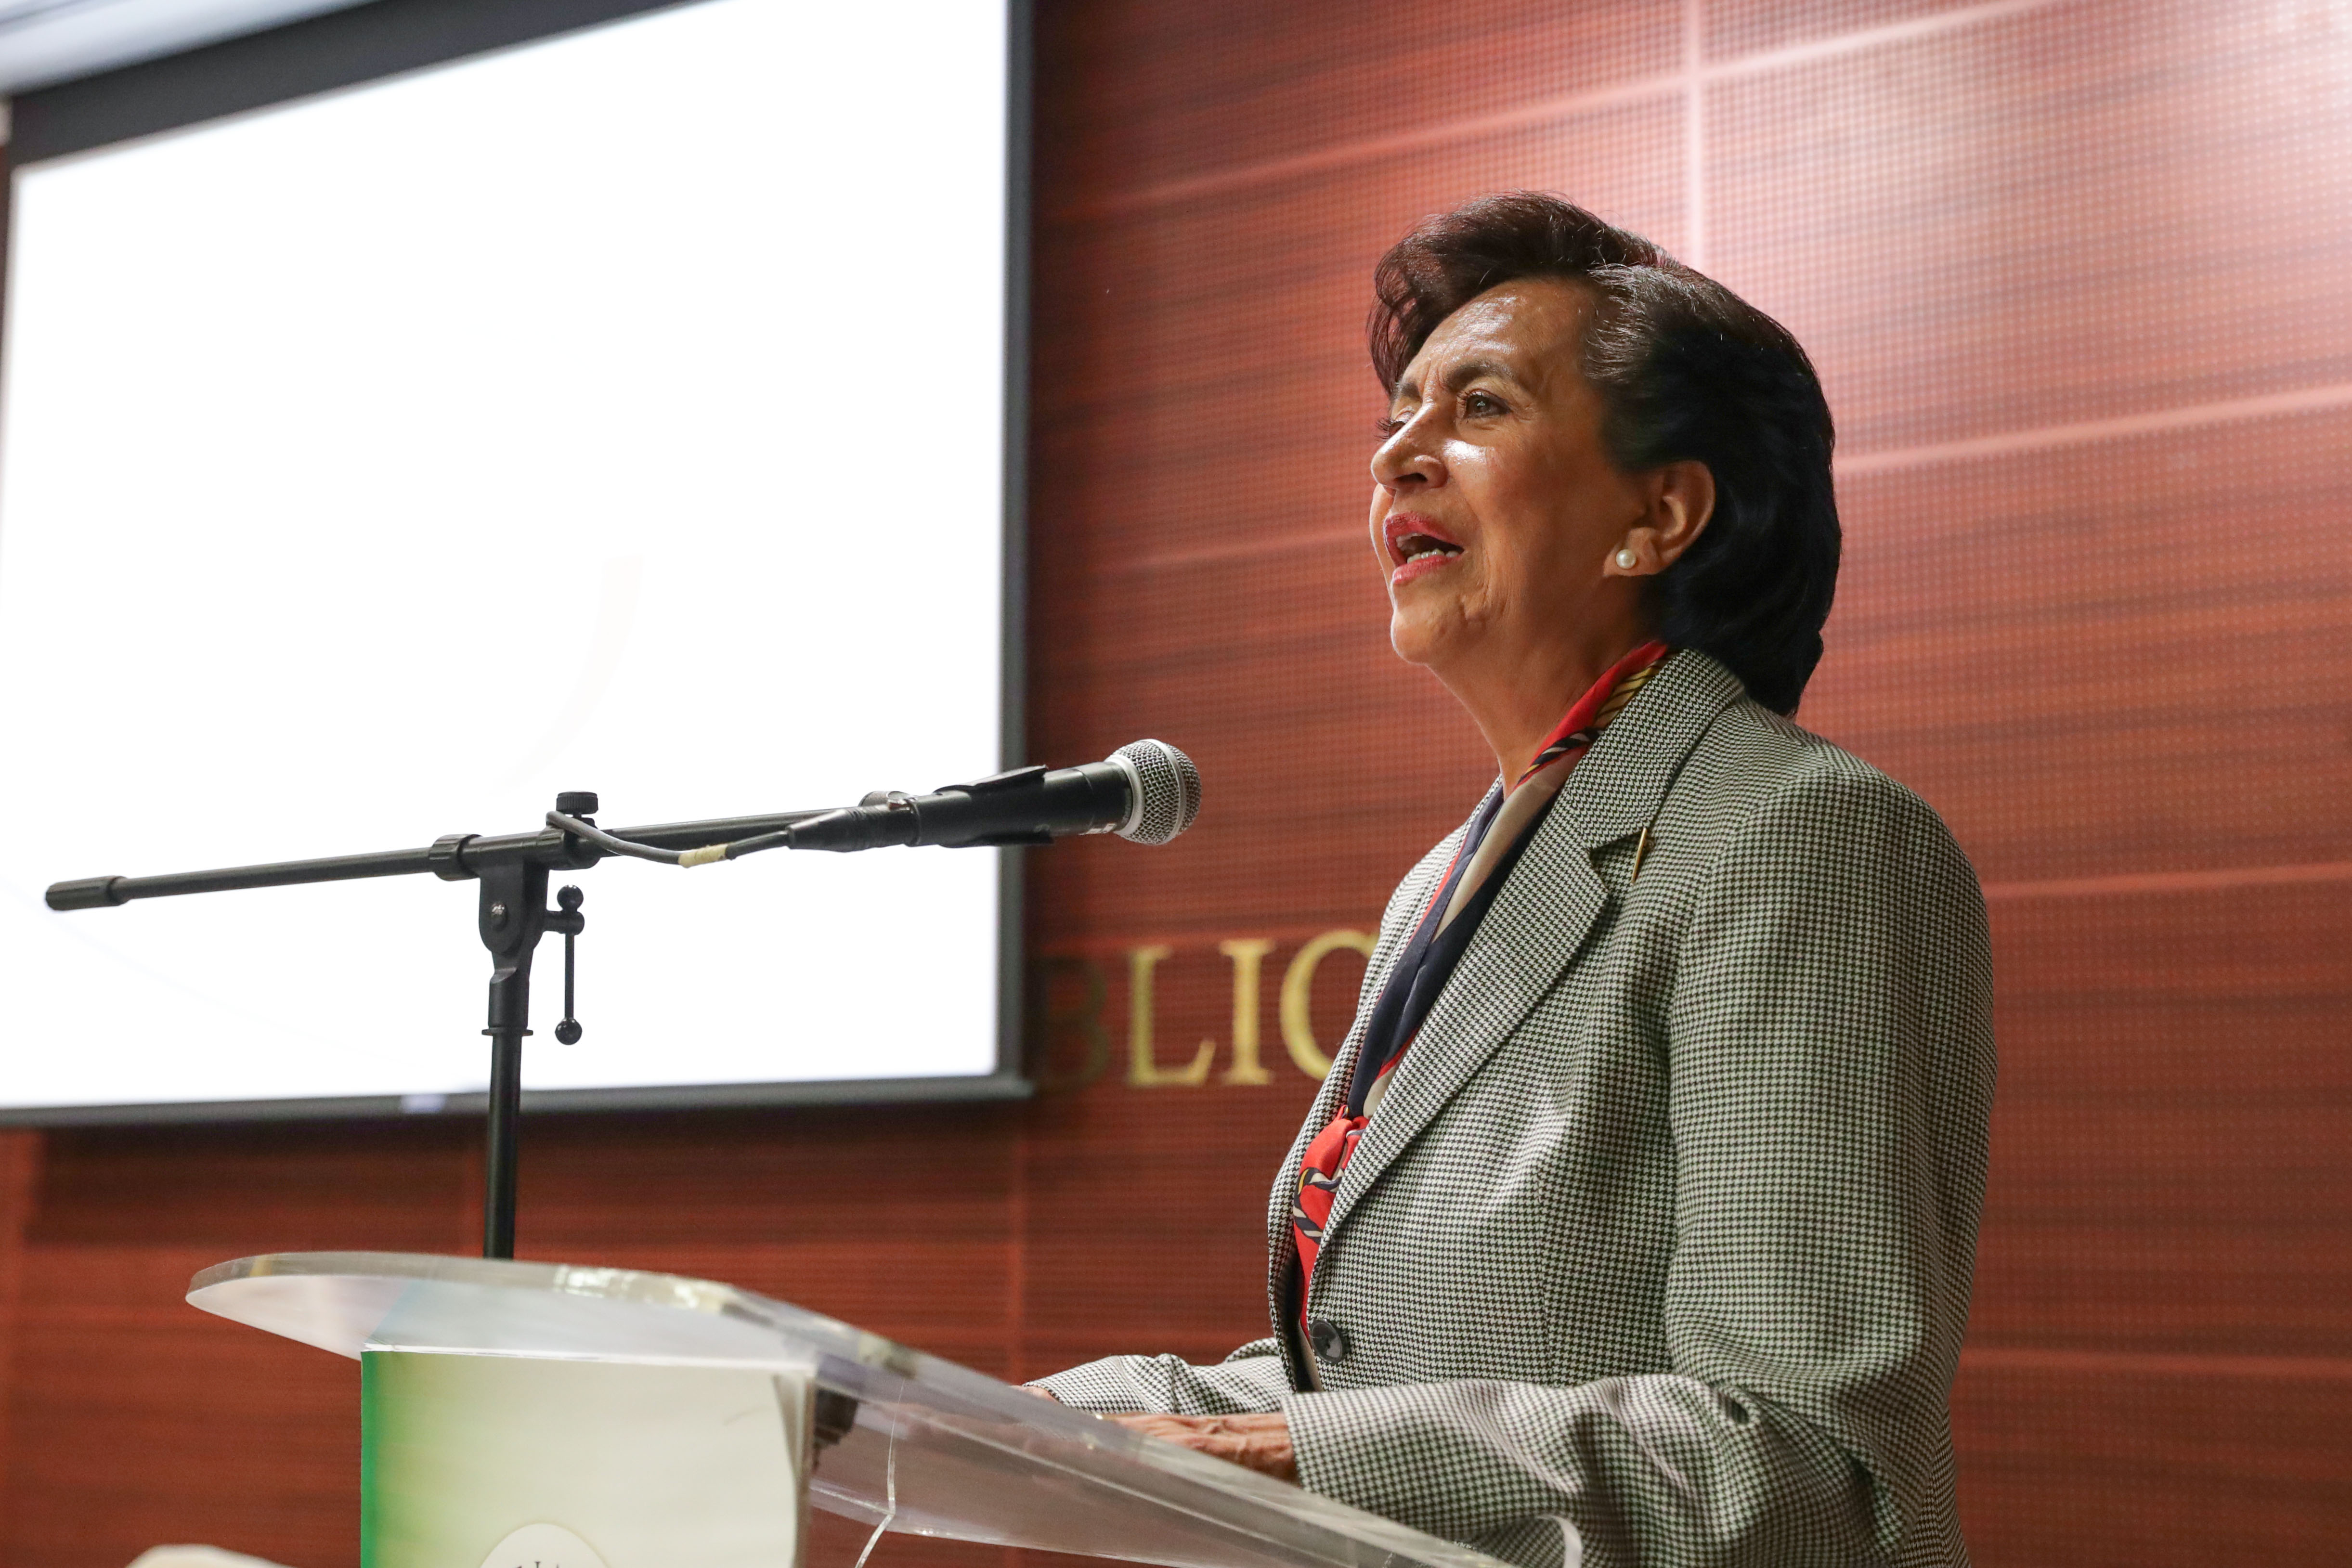  Presentan en el Senado libro “Mujeres haciendo historia en la vida política de México”